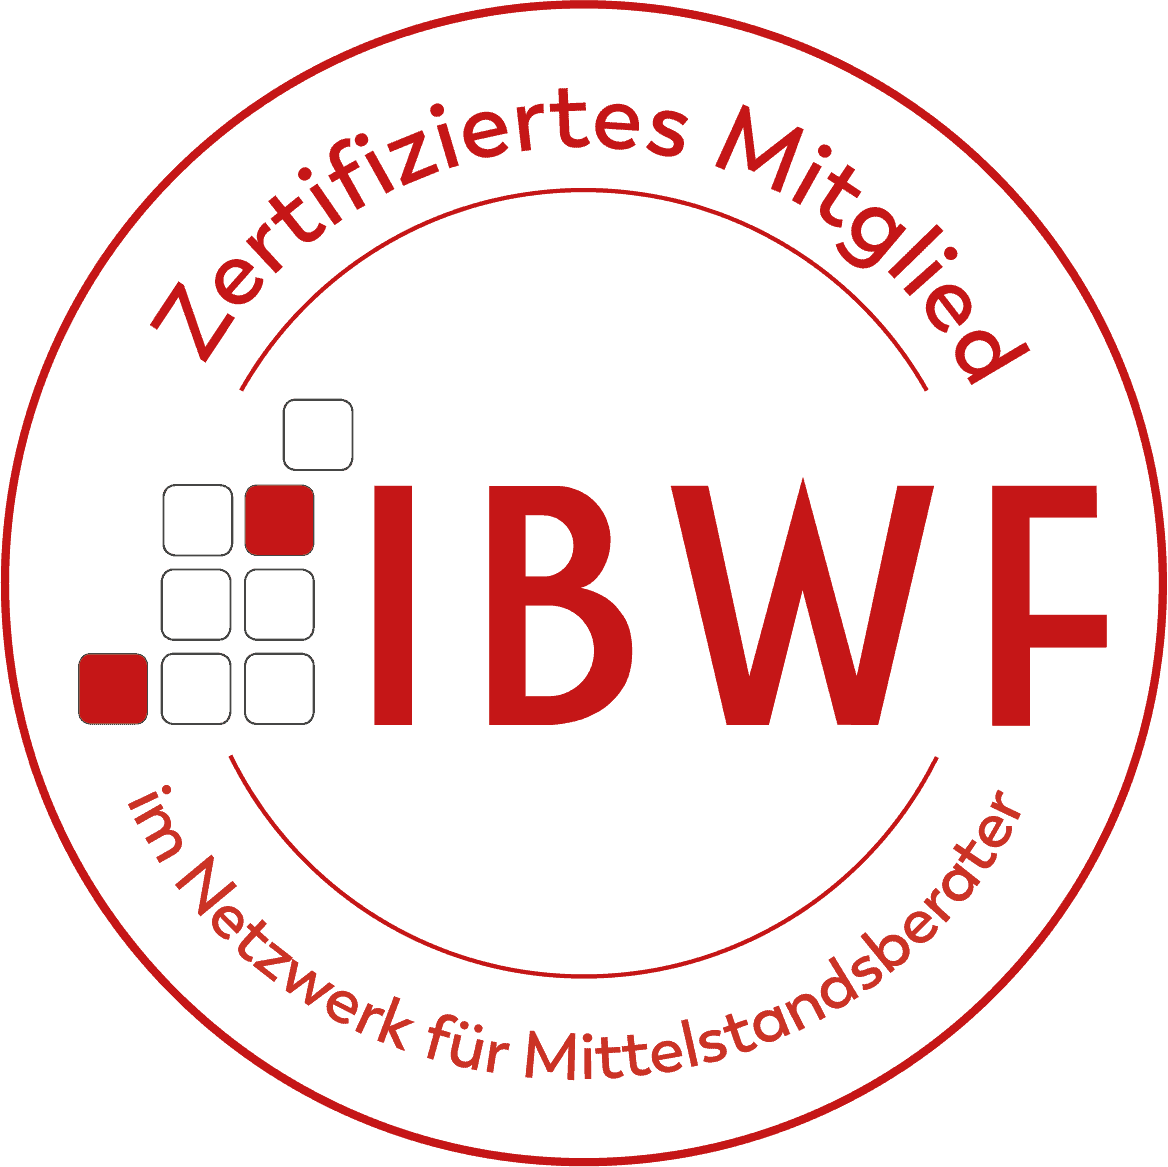 Zertif. Mitglied im Netzwerk für Mittelstandsberater: IBWF